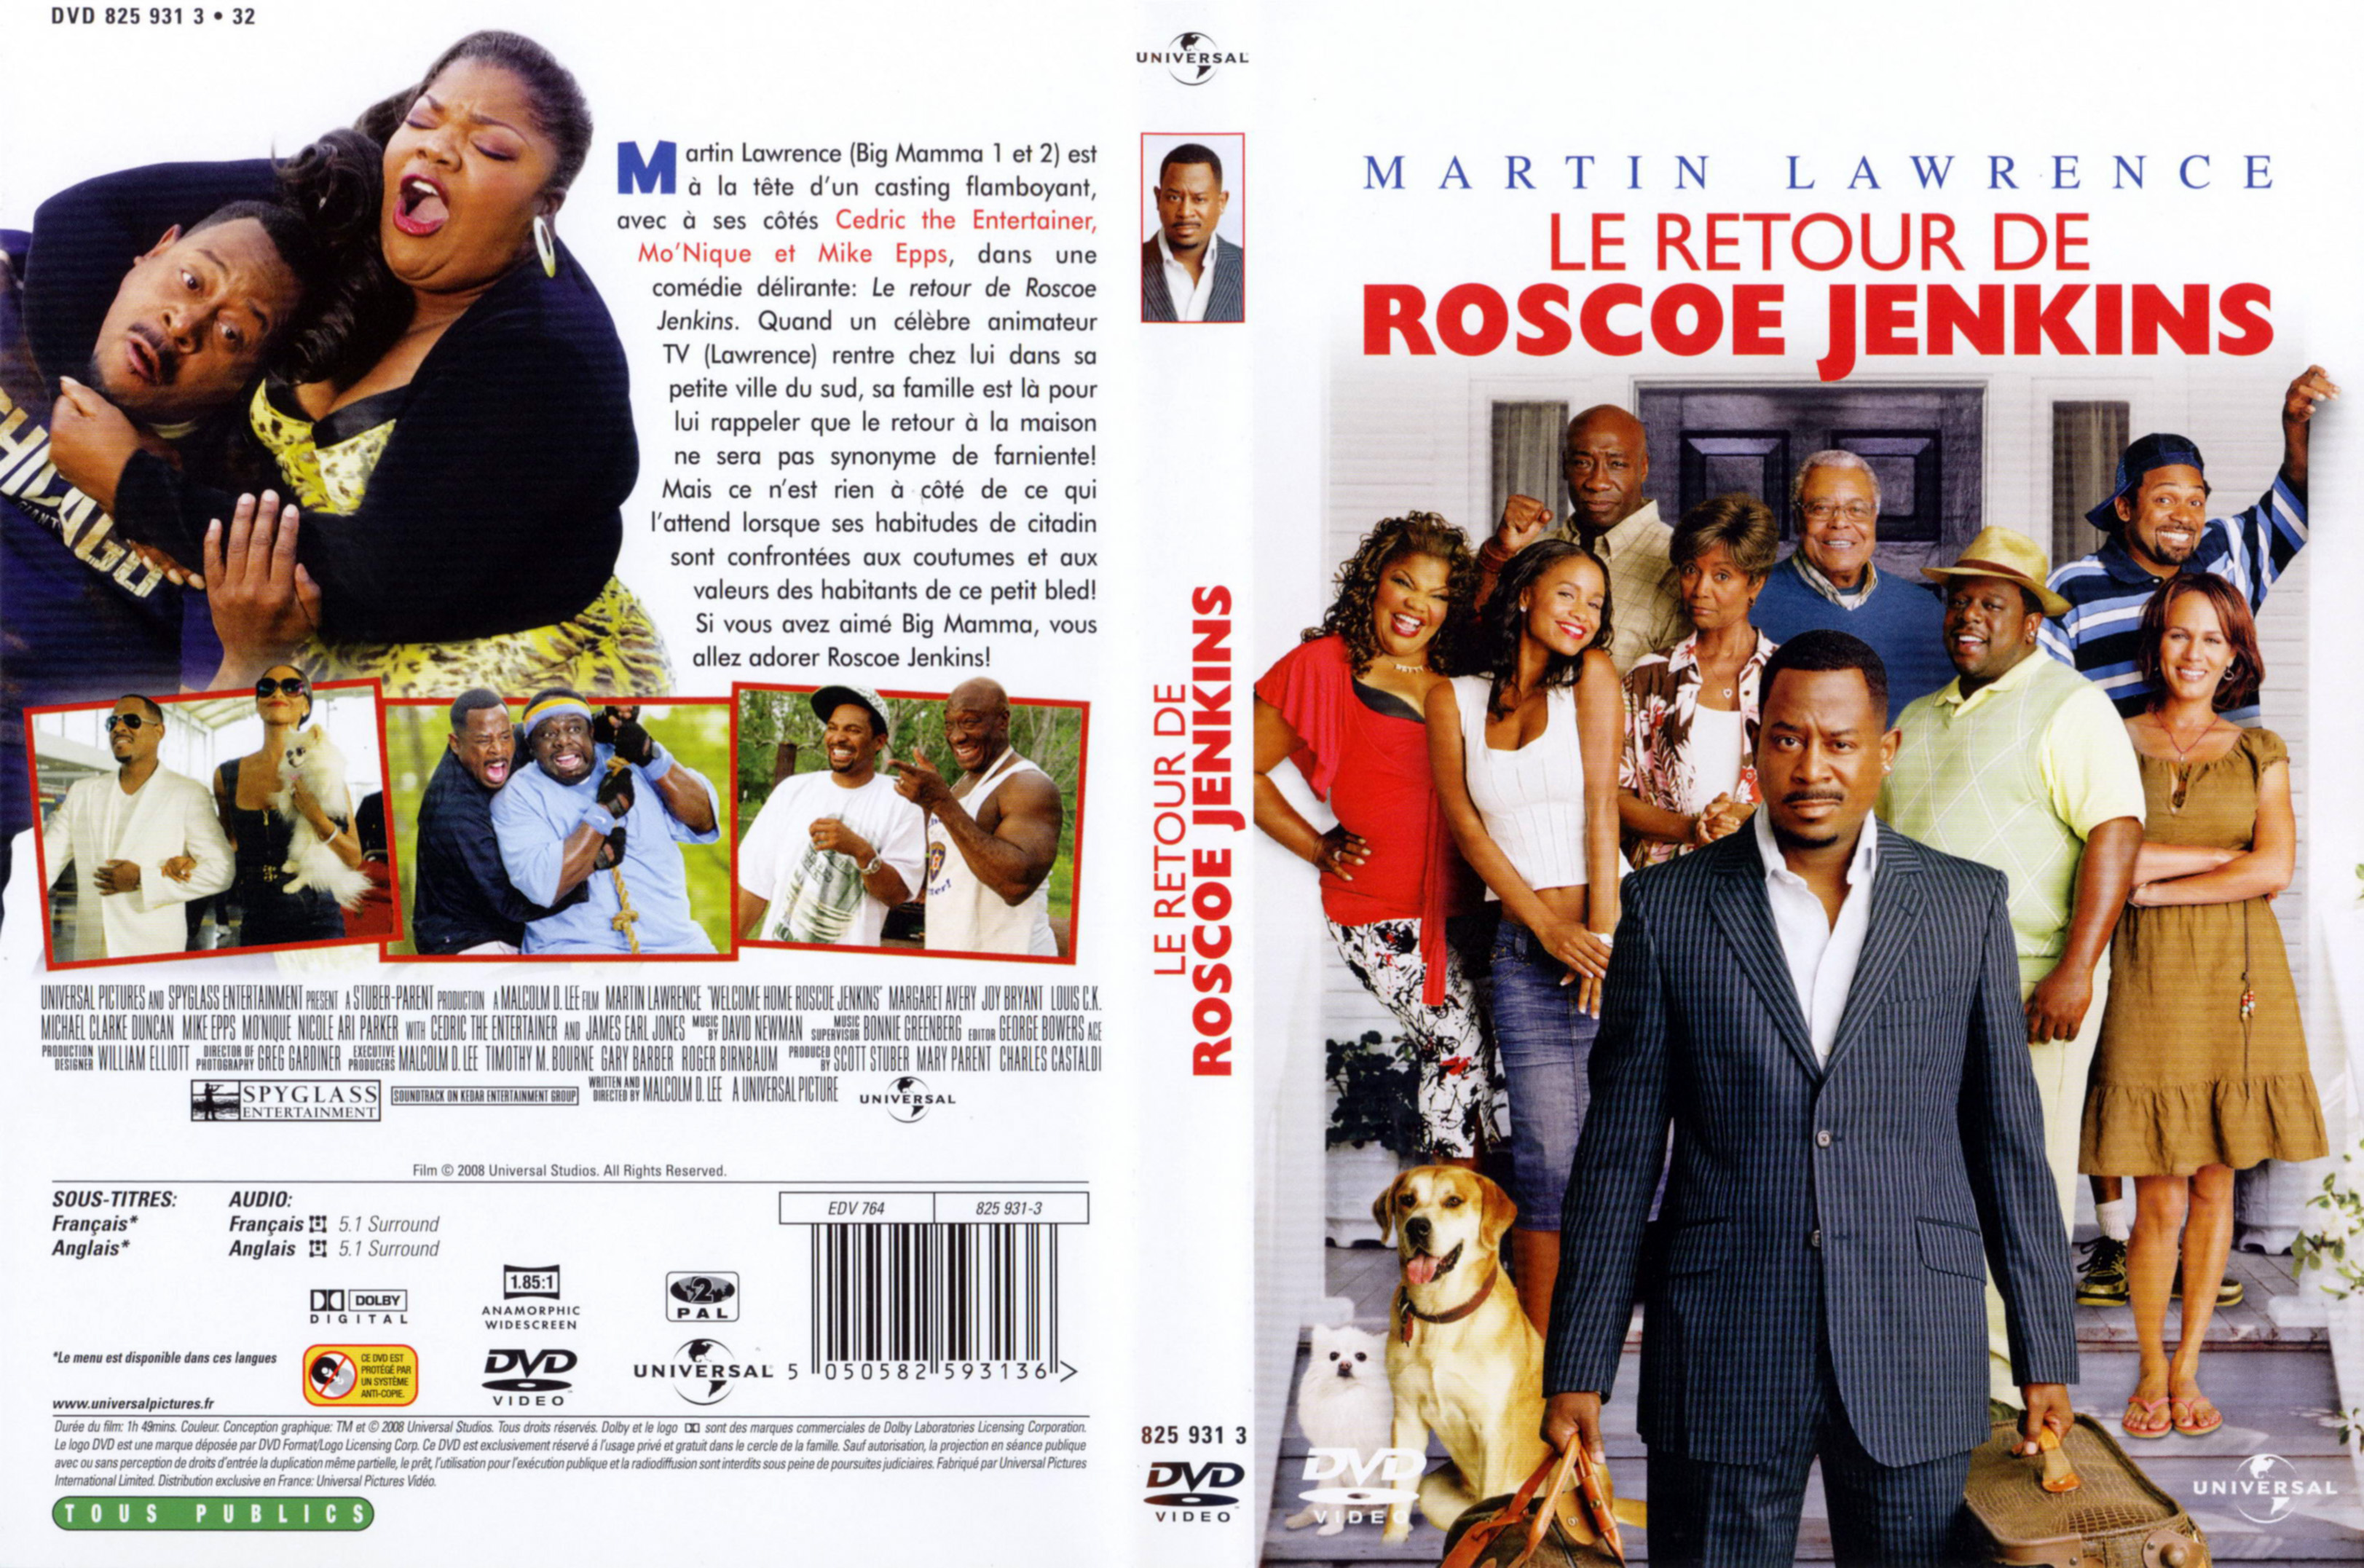 Jaquette DVD Le retour de Roscoe Jenkins v2